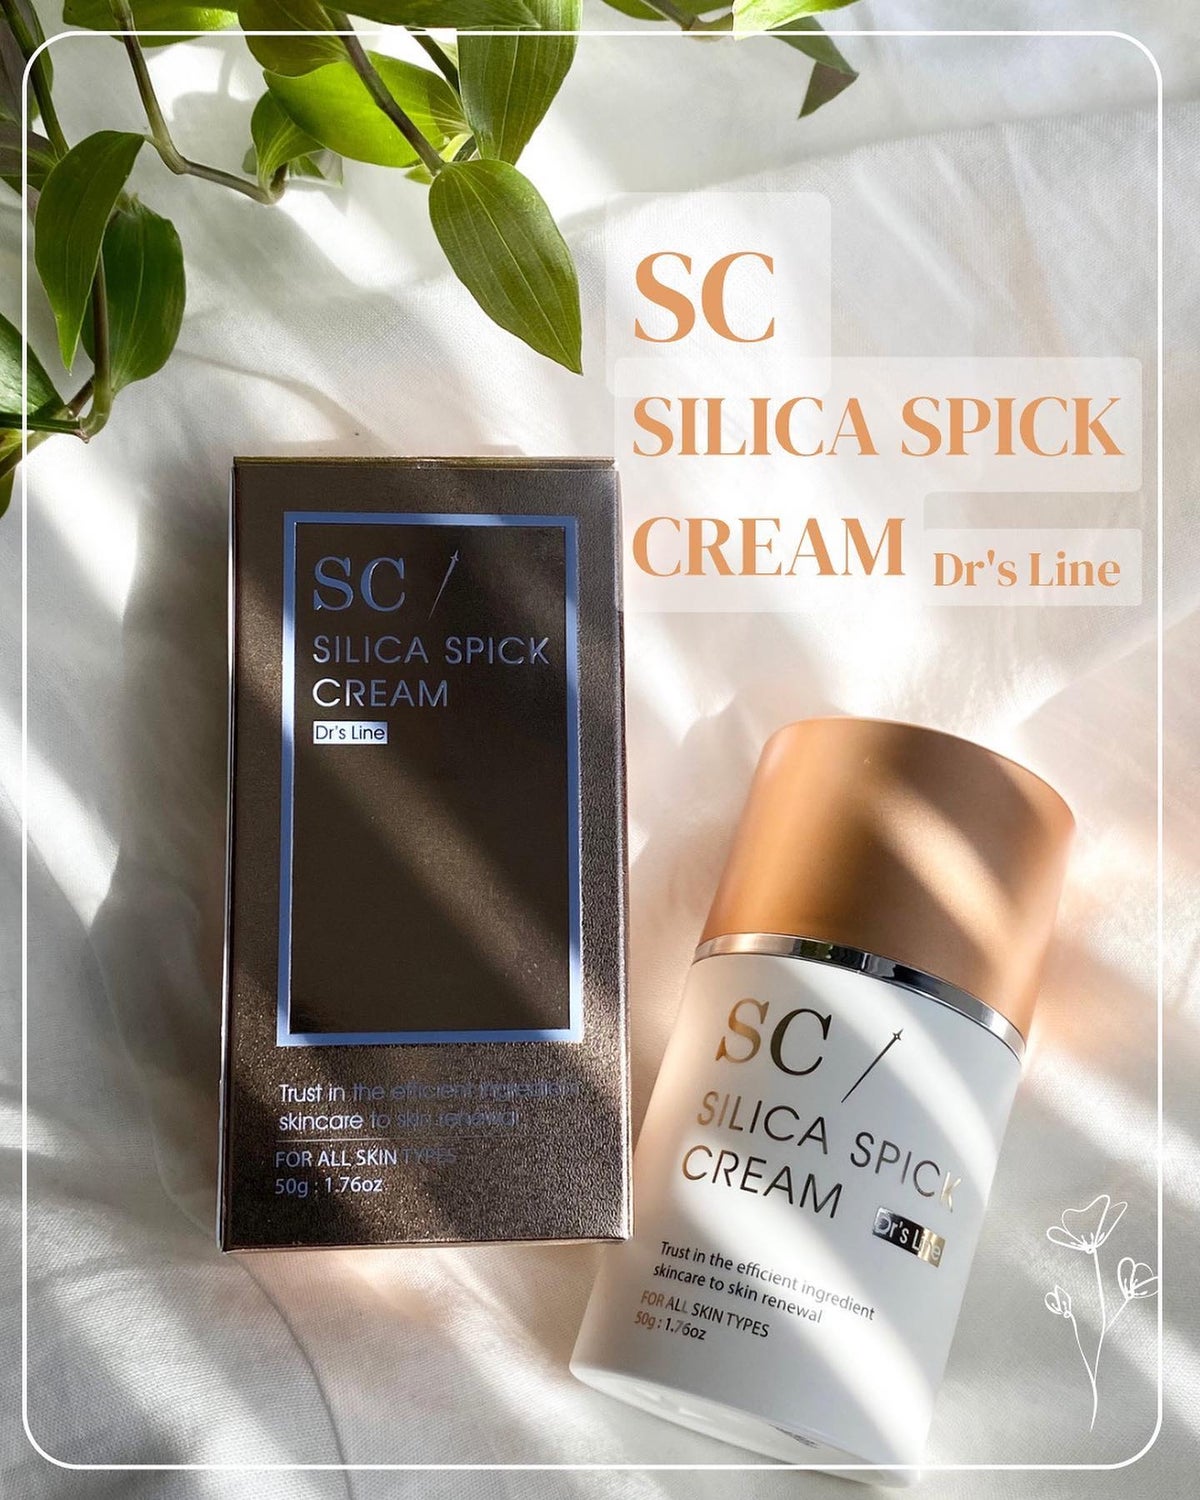 【週末限定価格】SILCA SPICK CREAM シリカスピッククリーム